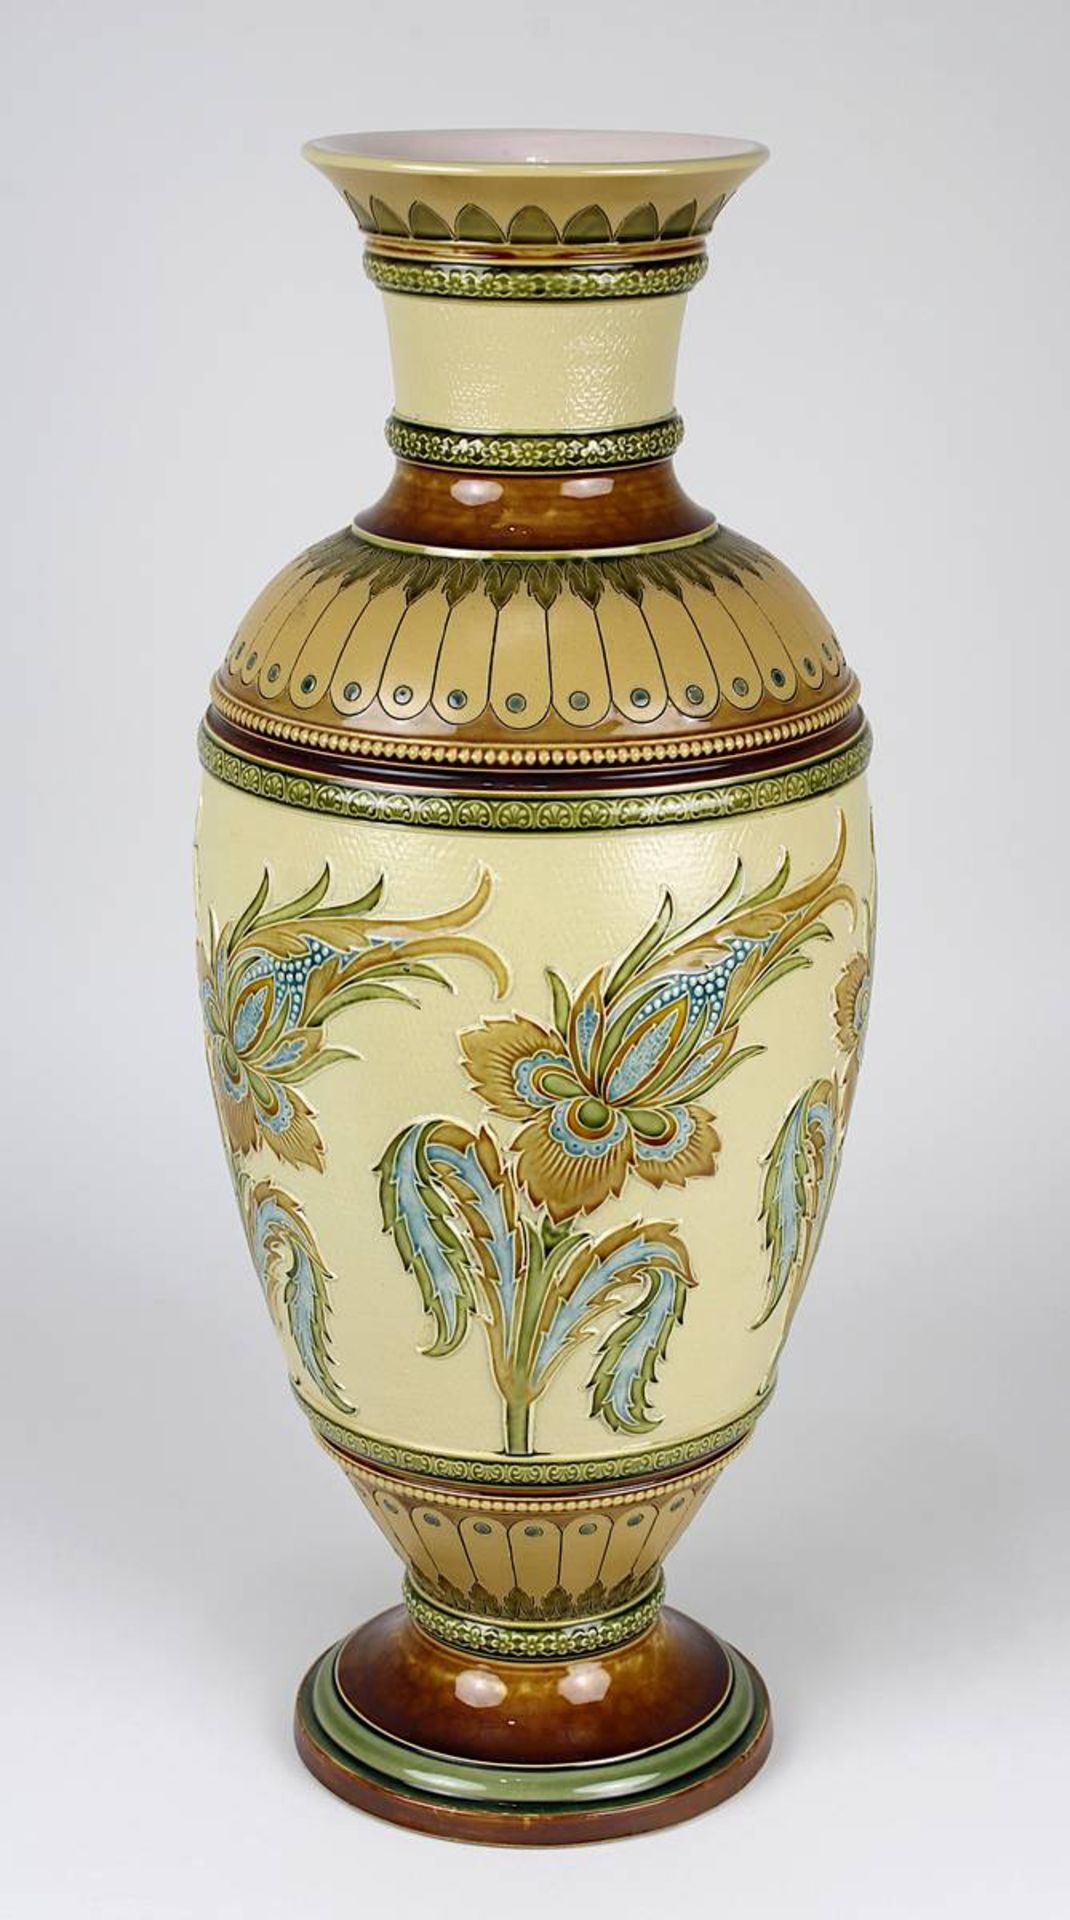 Große Villeroy & Boch Keramikvase mit Blumendekor, Mettlach 1898, balusterförmiger Keramikkorpus,